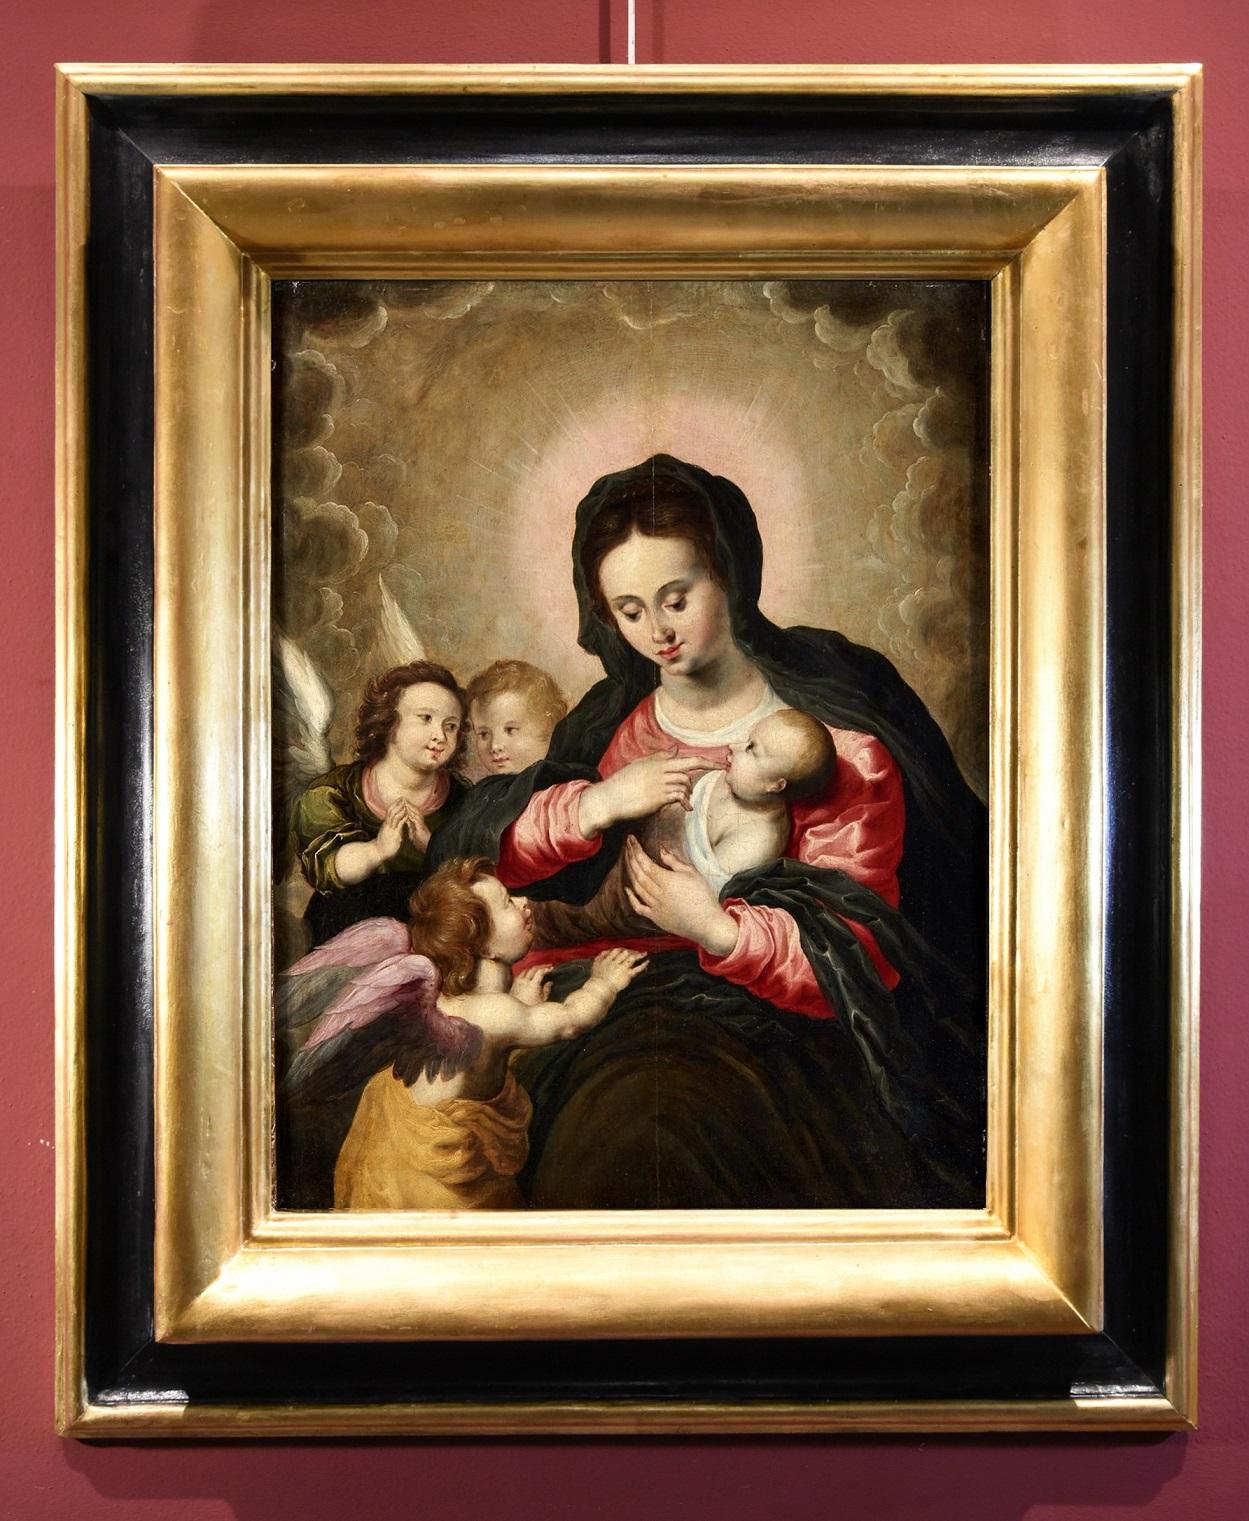 Madonna Angels Van Balen, Gemälde, Öl auf Tisch, Alter Meister, 16./17. Jahrhundert, Flämisch – Painting von Hendrick van Balen (Antwerp 1575 - 1632)